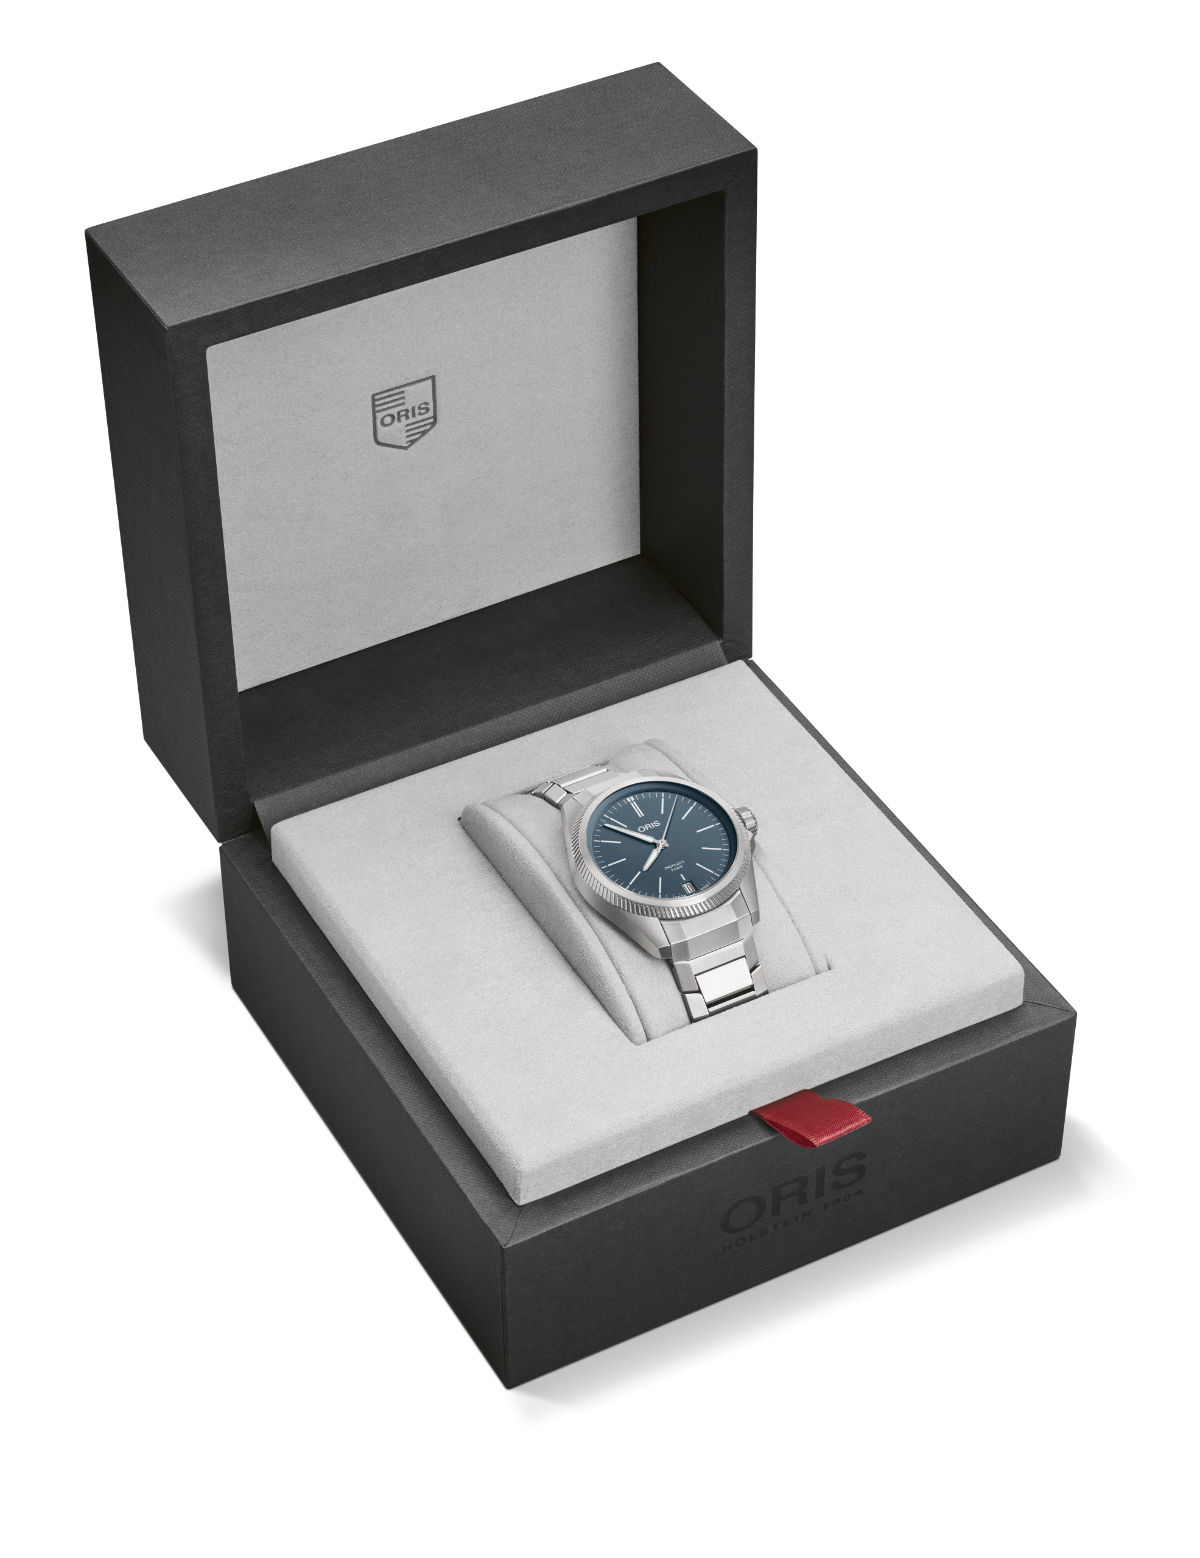 Oris Presents Its New ProPilot X Calibre 400 Watch